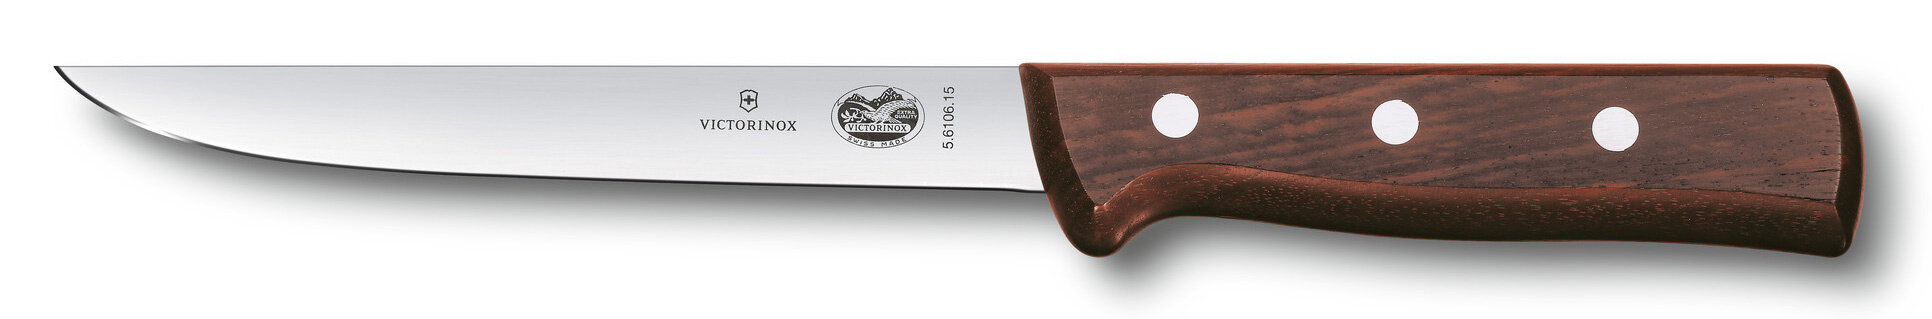 Нож кухонный Victorinox 5.6106.15 стальной обвалочный лезвие 150мм прямая заточка коричневый